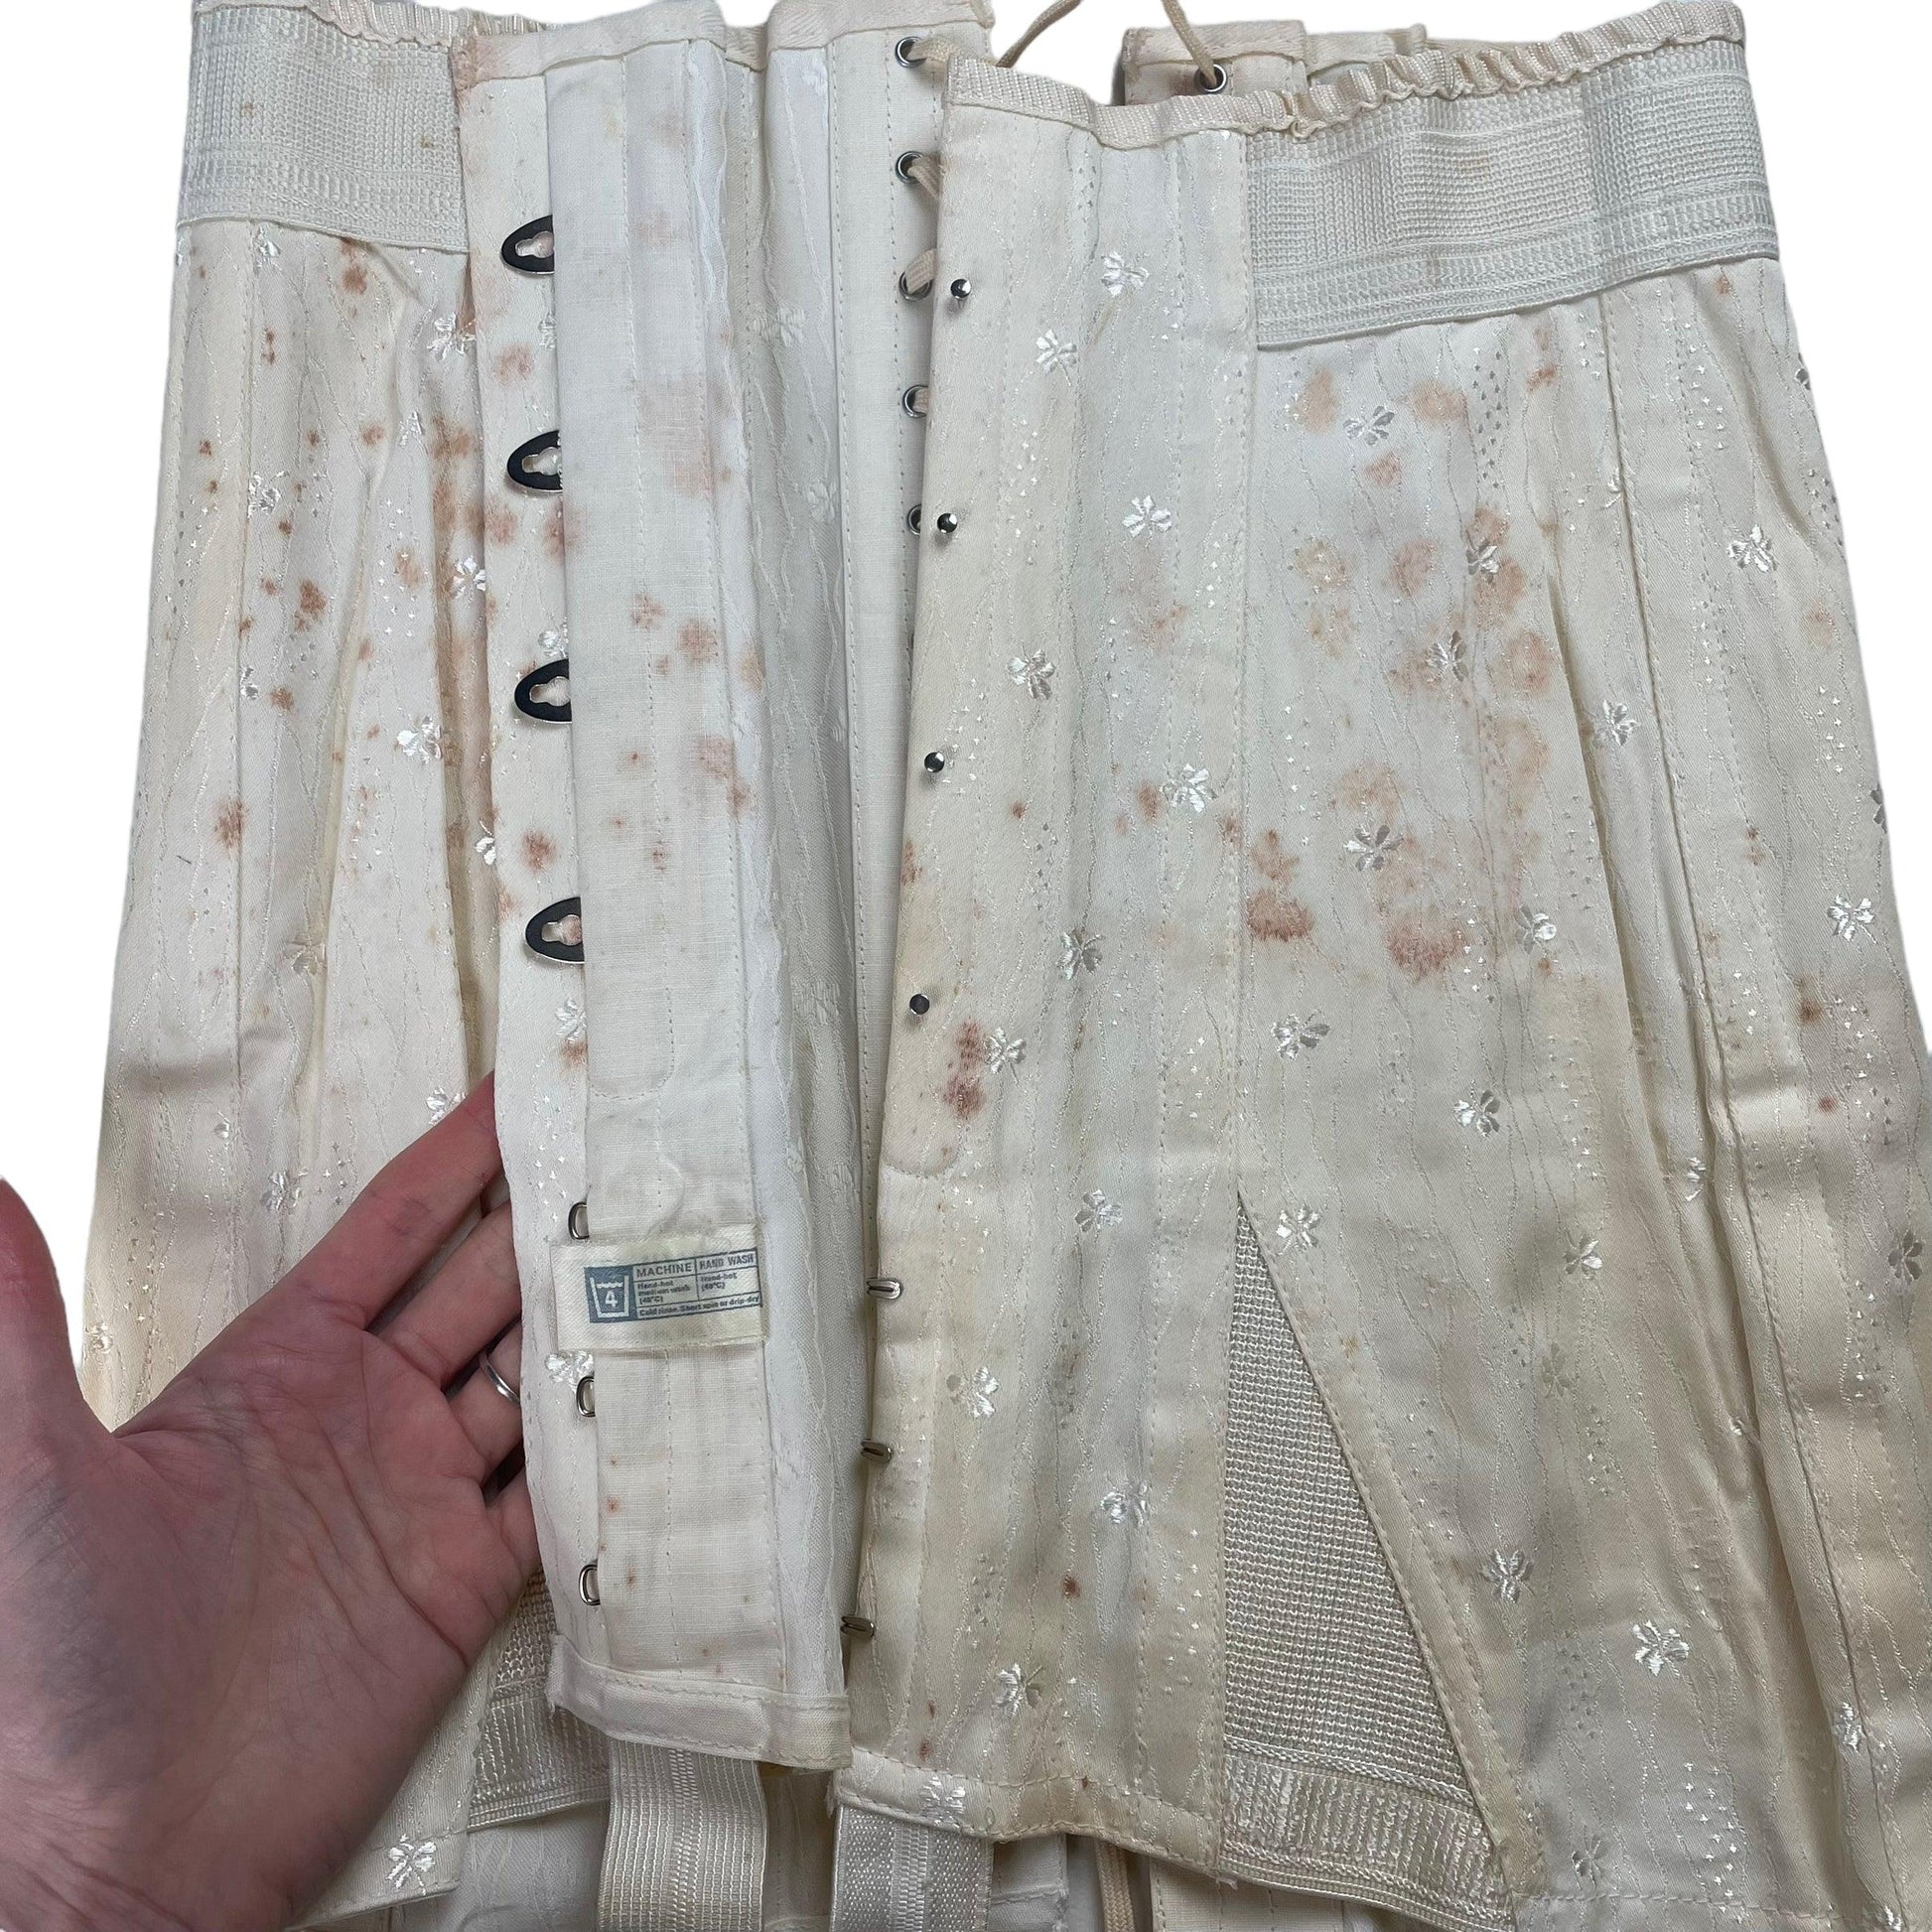 Antique 1940s corset girdle - Known Source